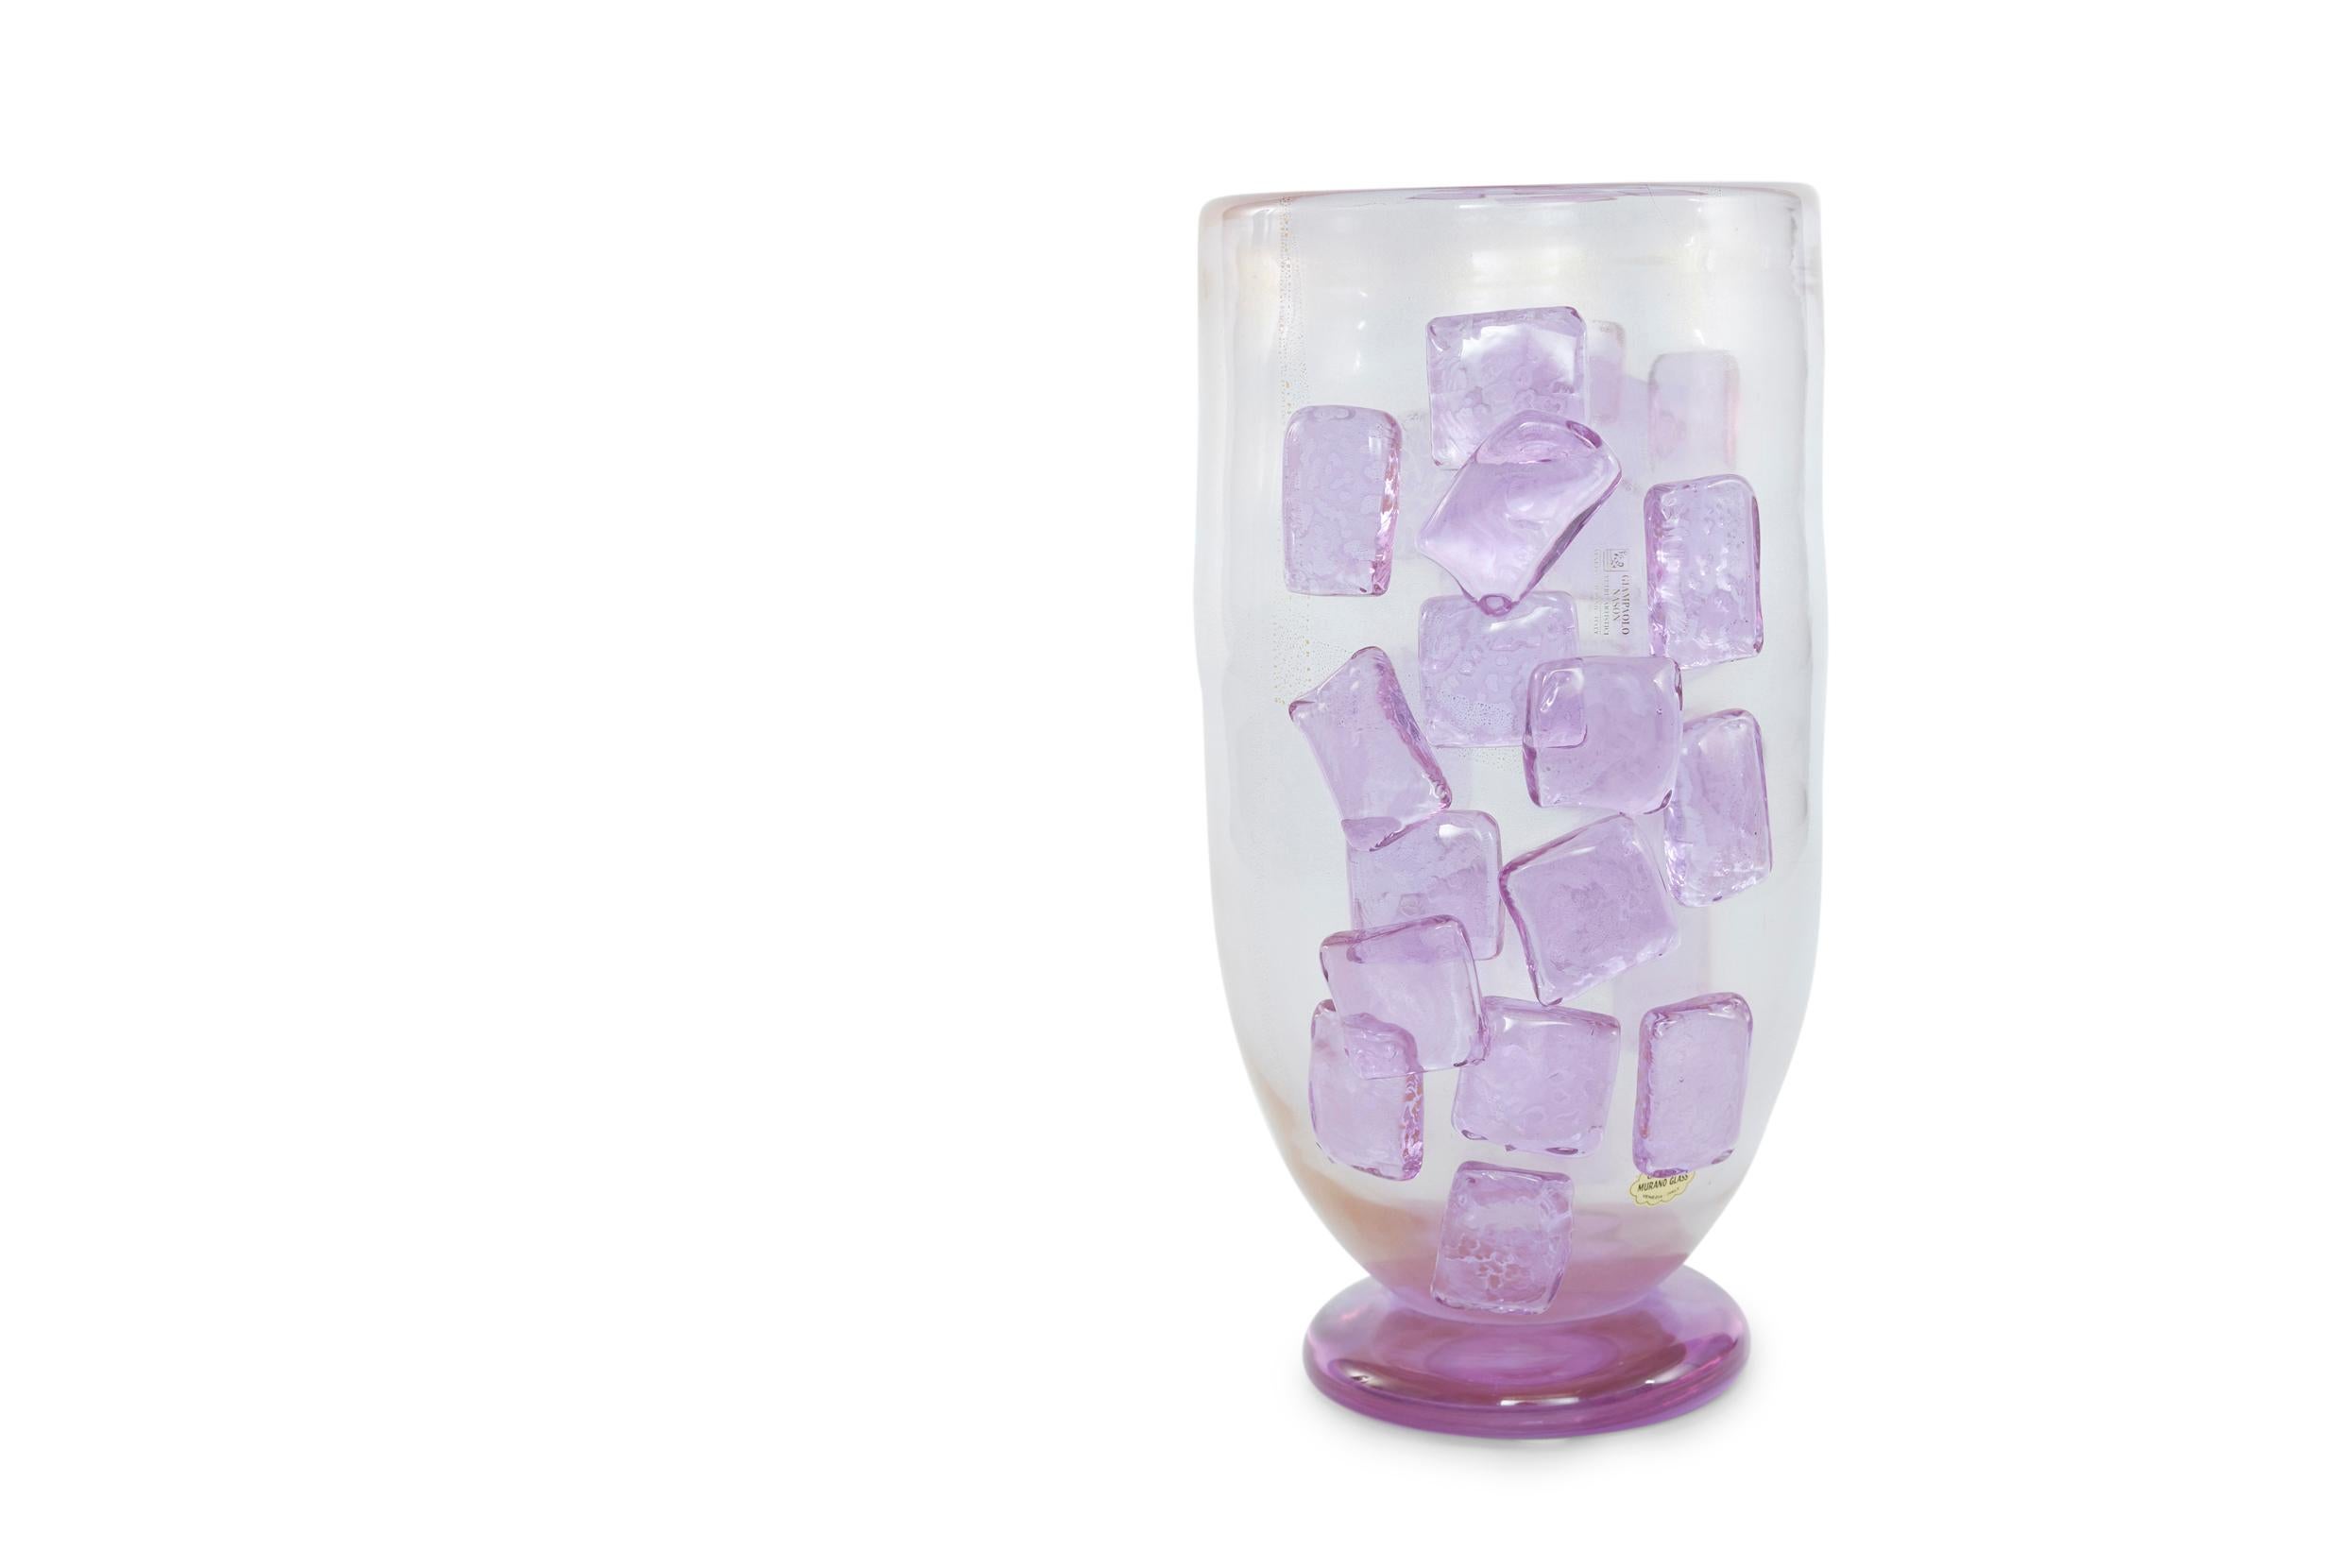 Art Deco Style Murano Glass Decorative Vase For Sale 3